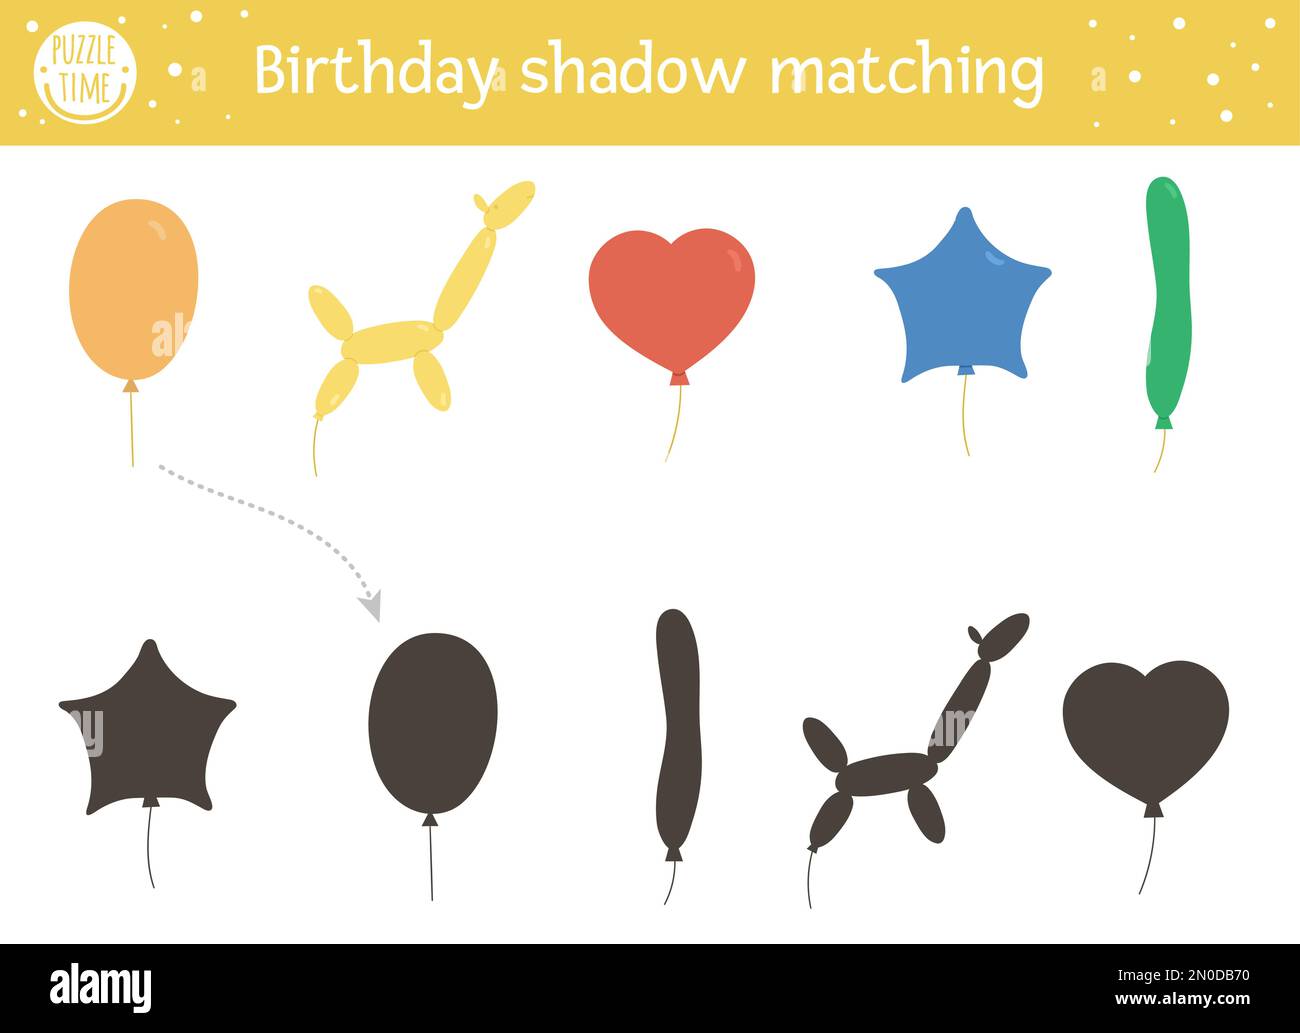 Activité de mise en correspondance des ombres d'anniversaire pour les enfants. Puzzle amusant avec des ballons mignons de différentes formes. Fête des fêtes jeu éducatif pour les enfants. Rechercher Illustration de Vecteur